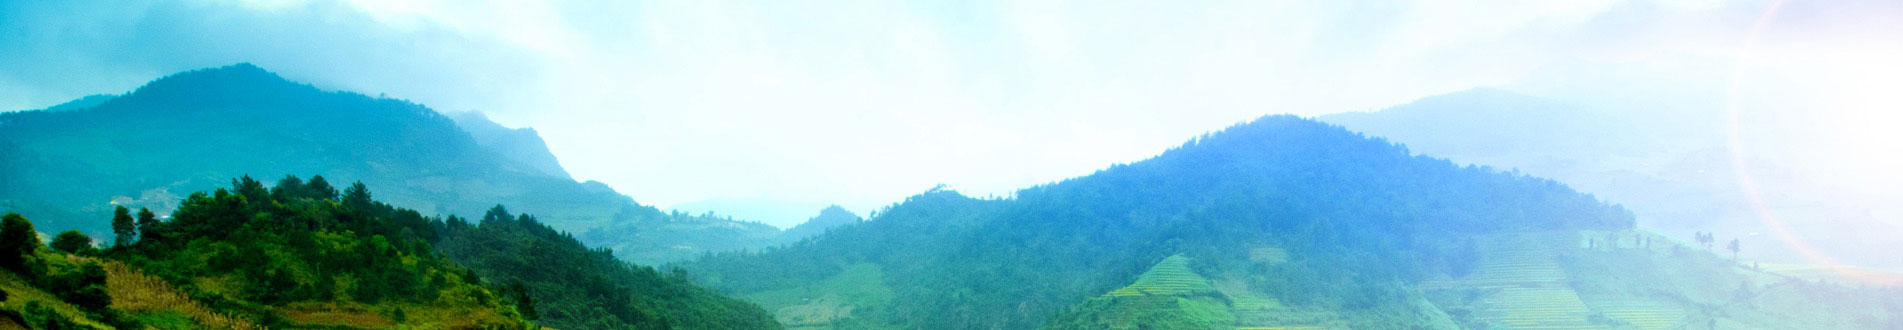 Beautiful landscape valley of Ban Ho vilage